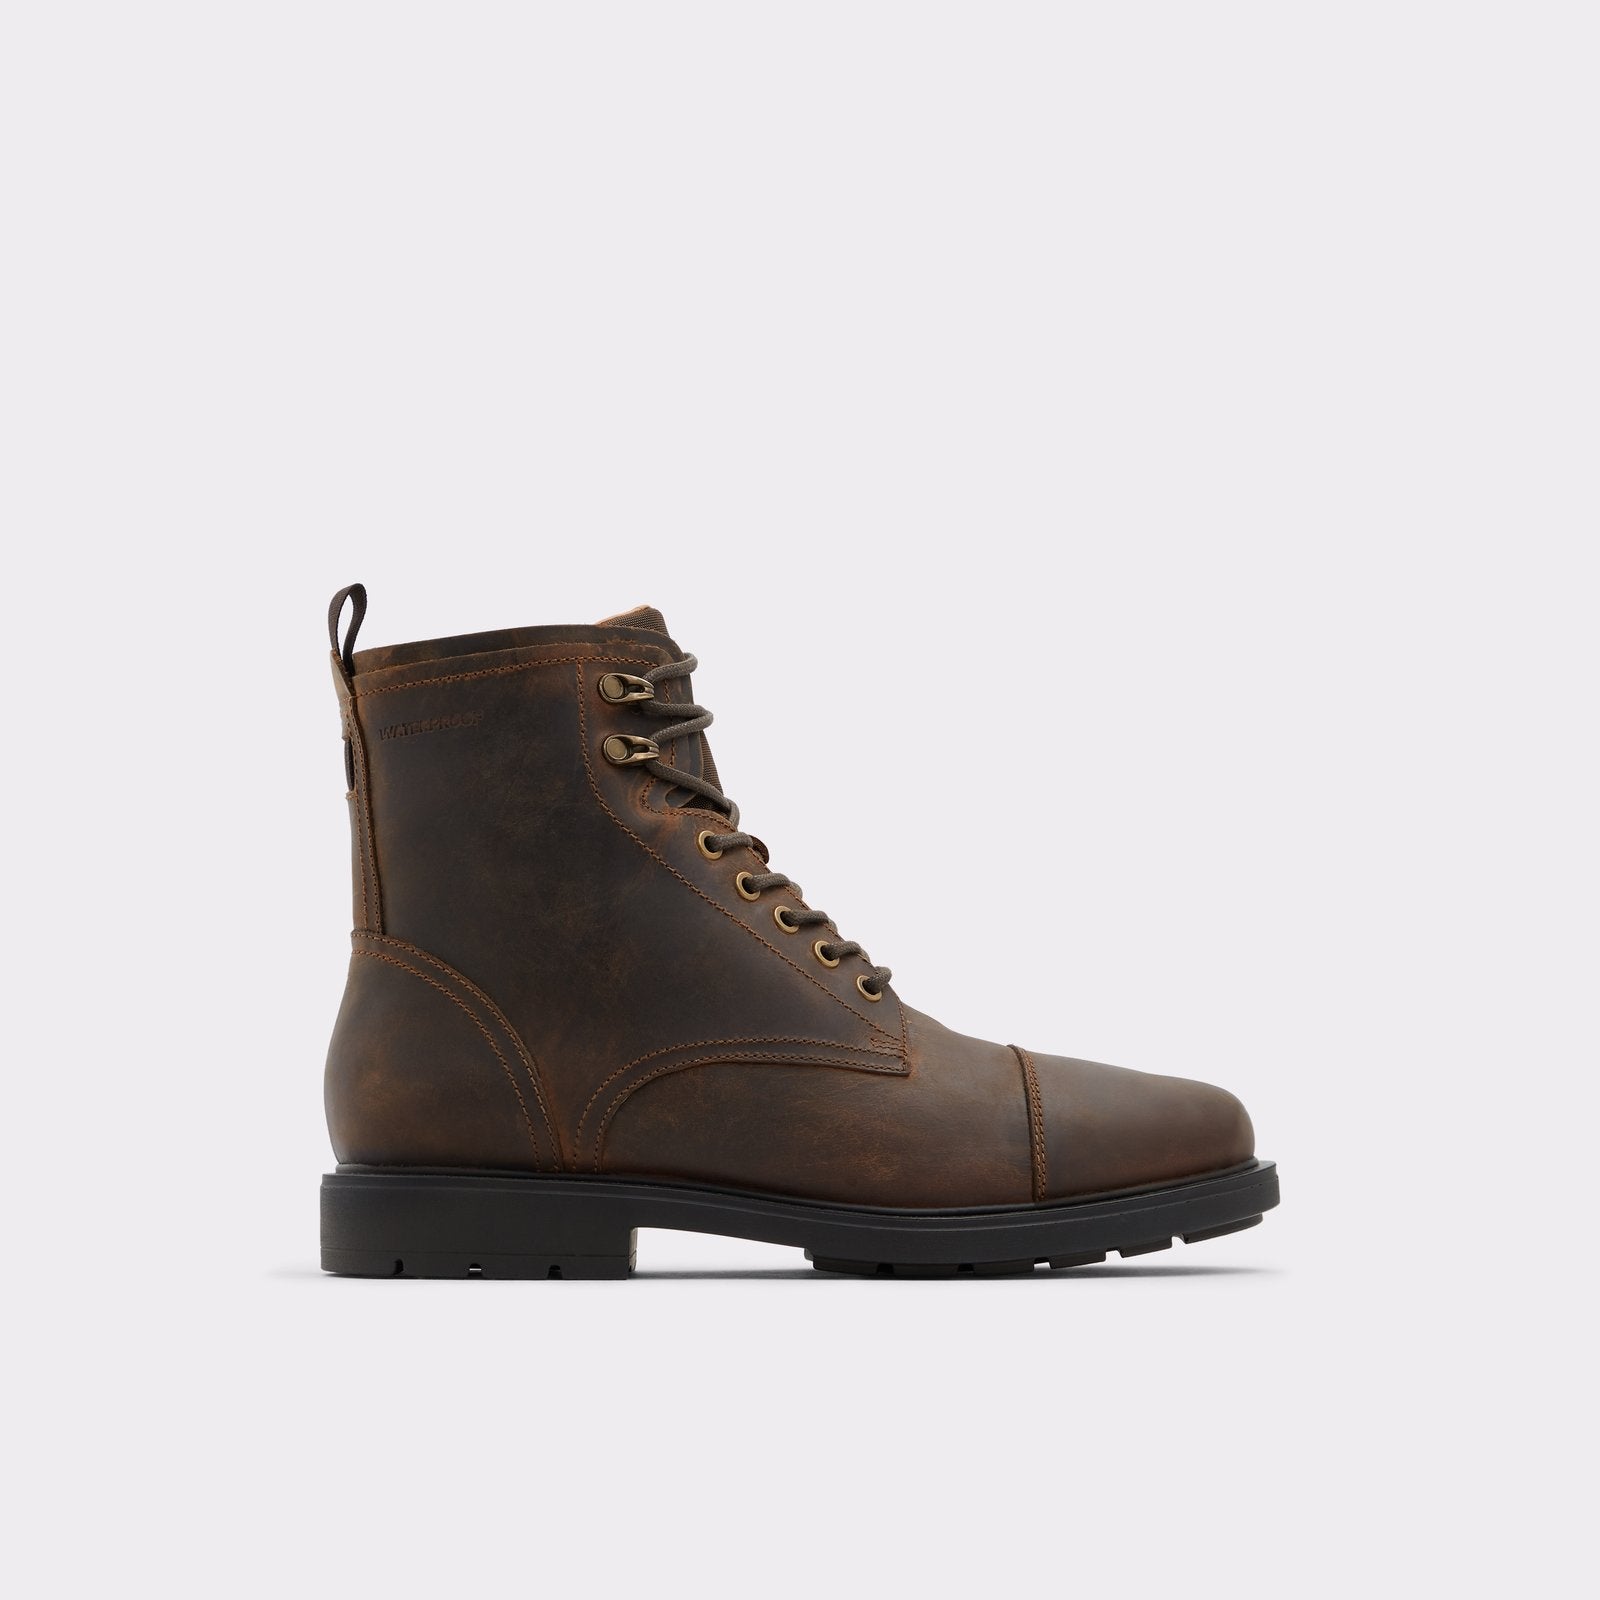 Aldo Men's Boots (Dark Brown) – ALDO Shoes UK